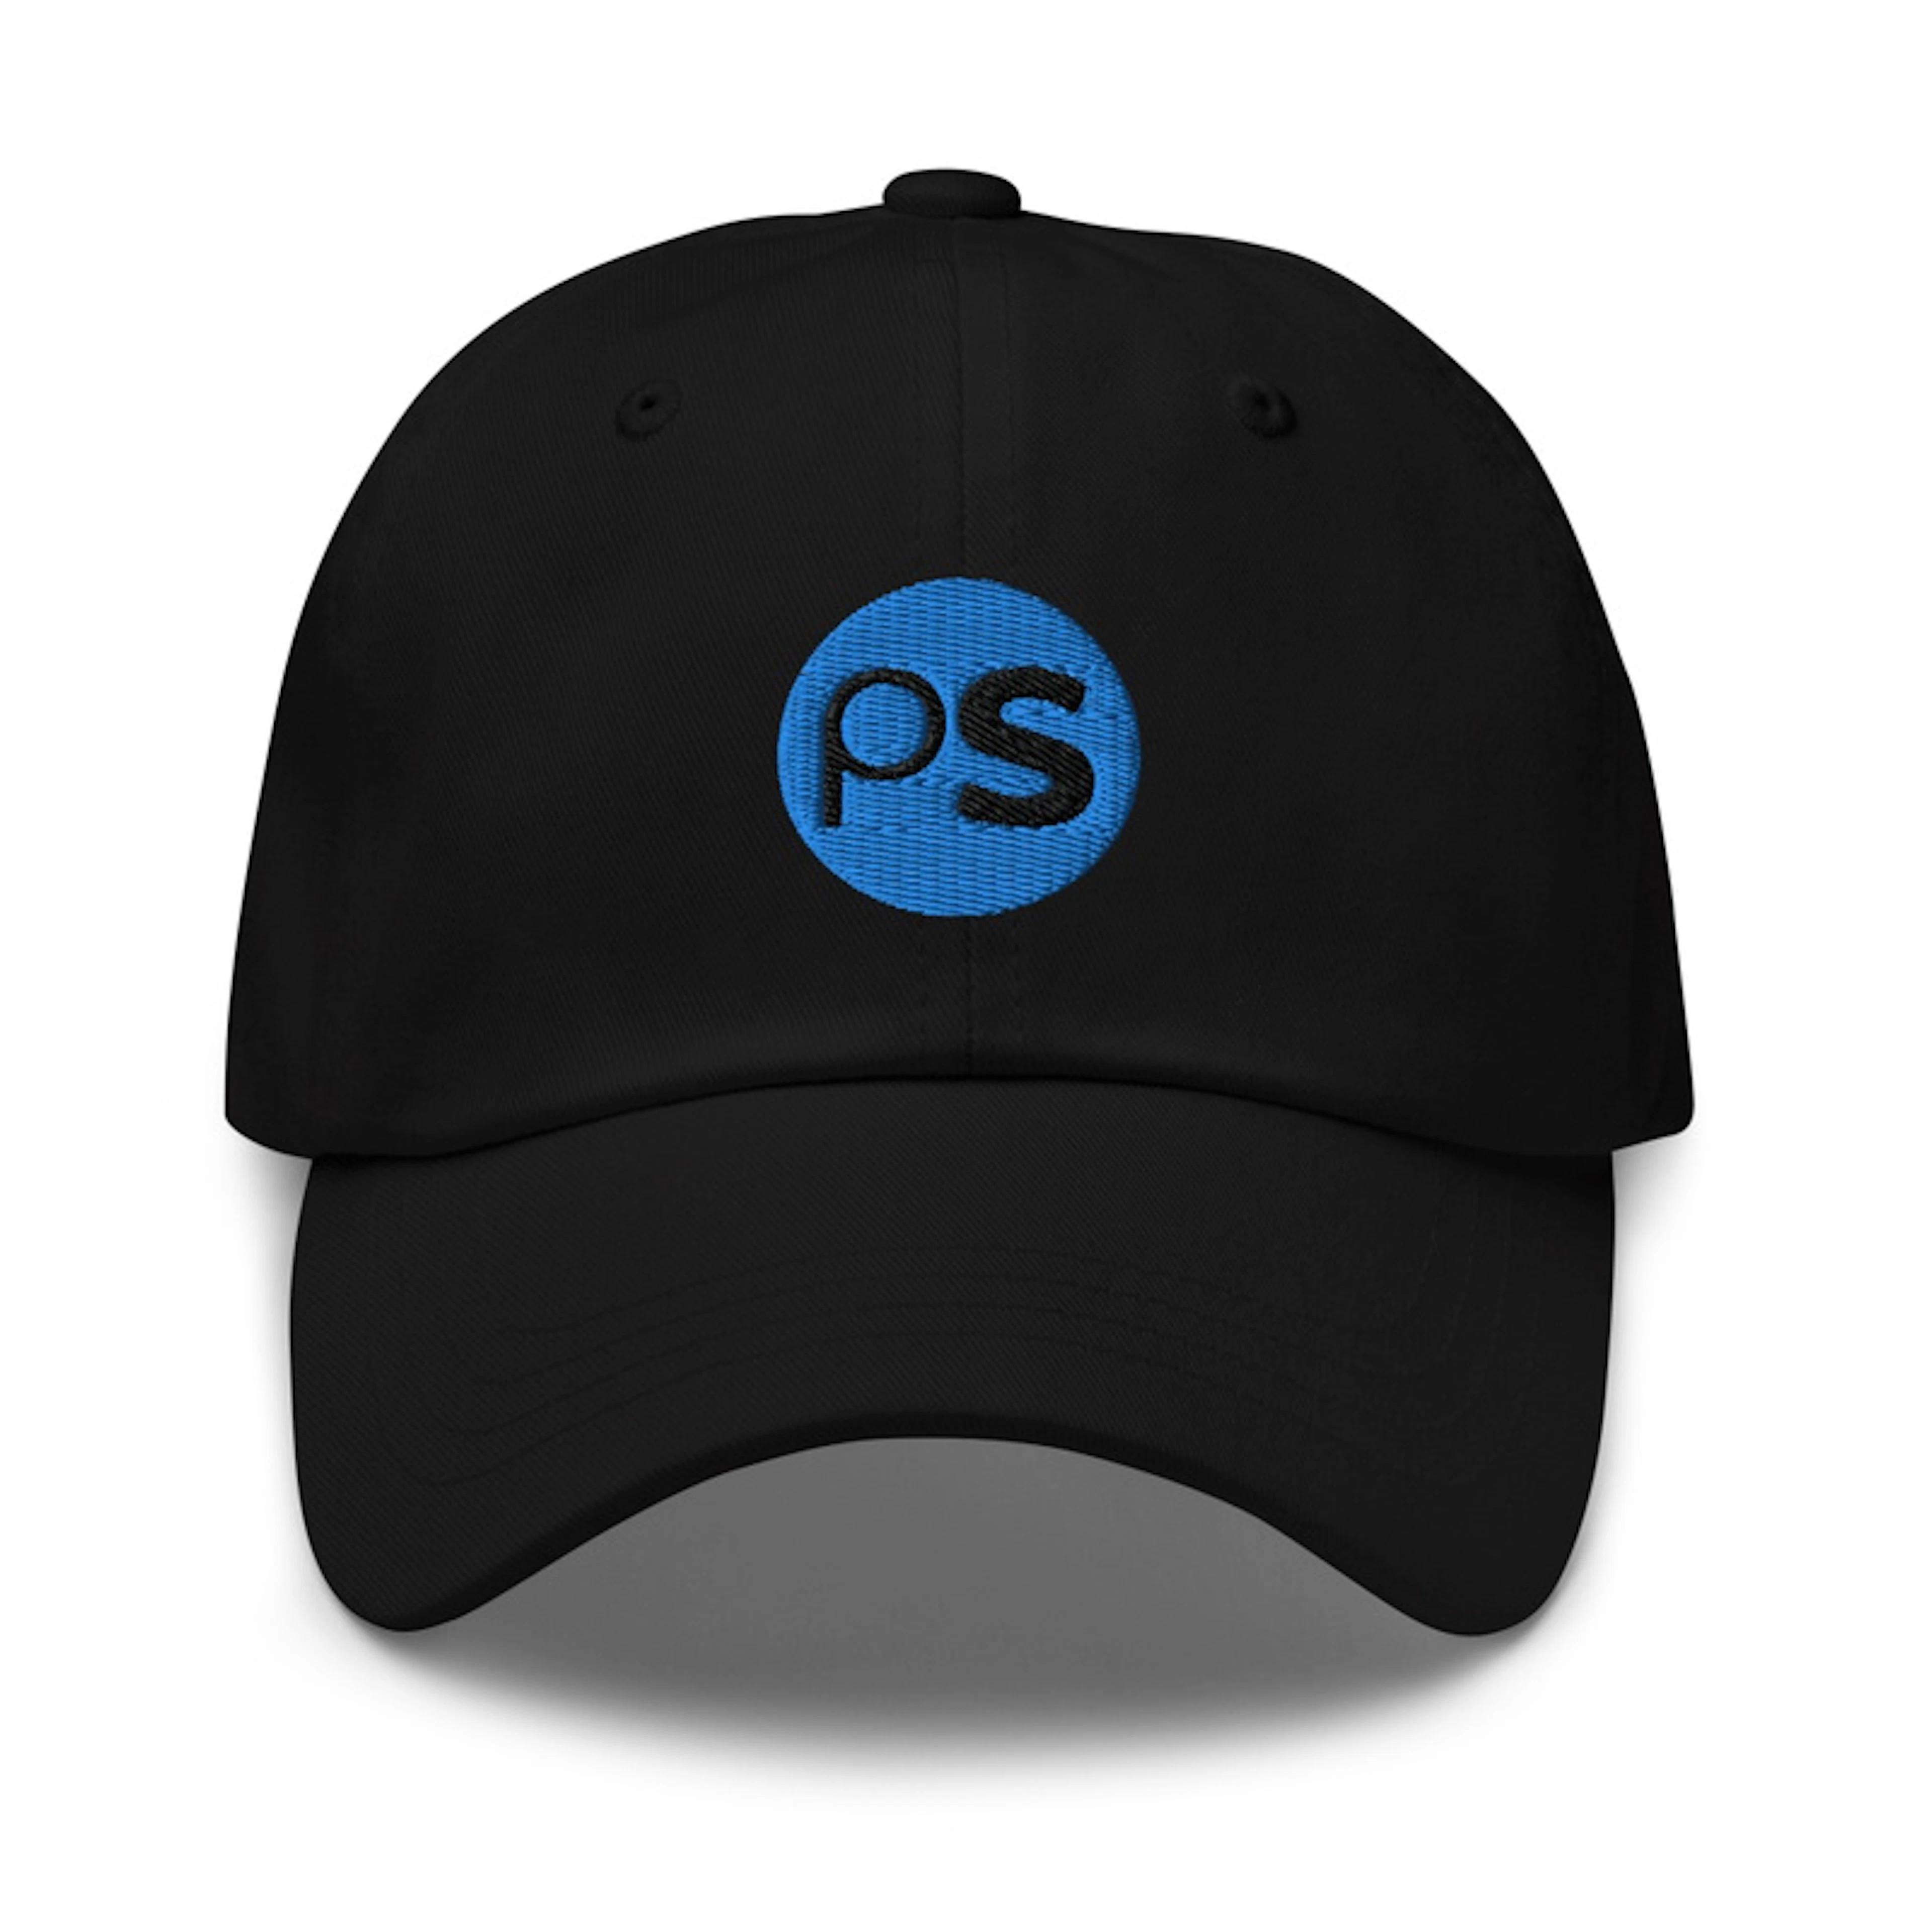 The P&S cap!